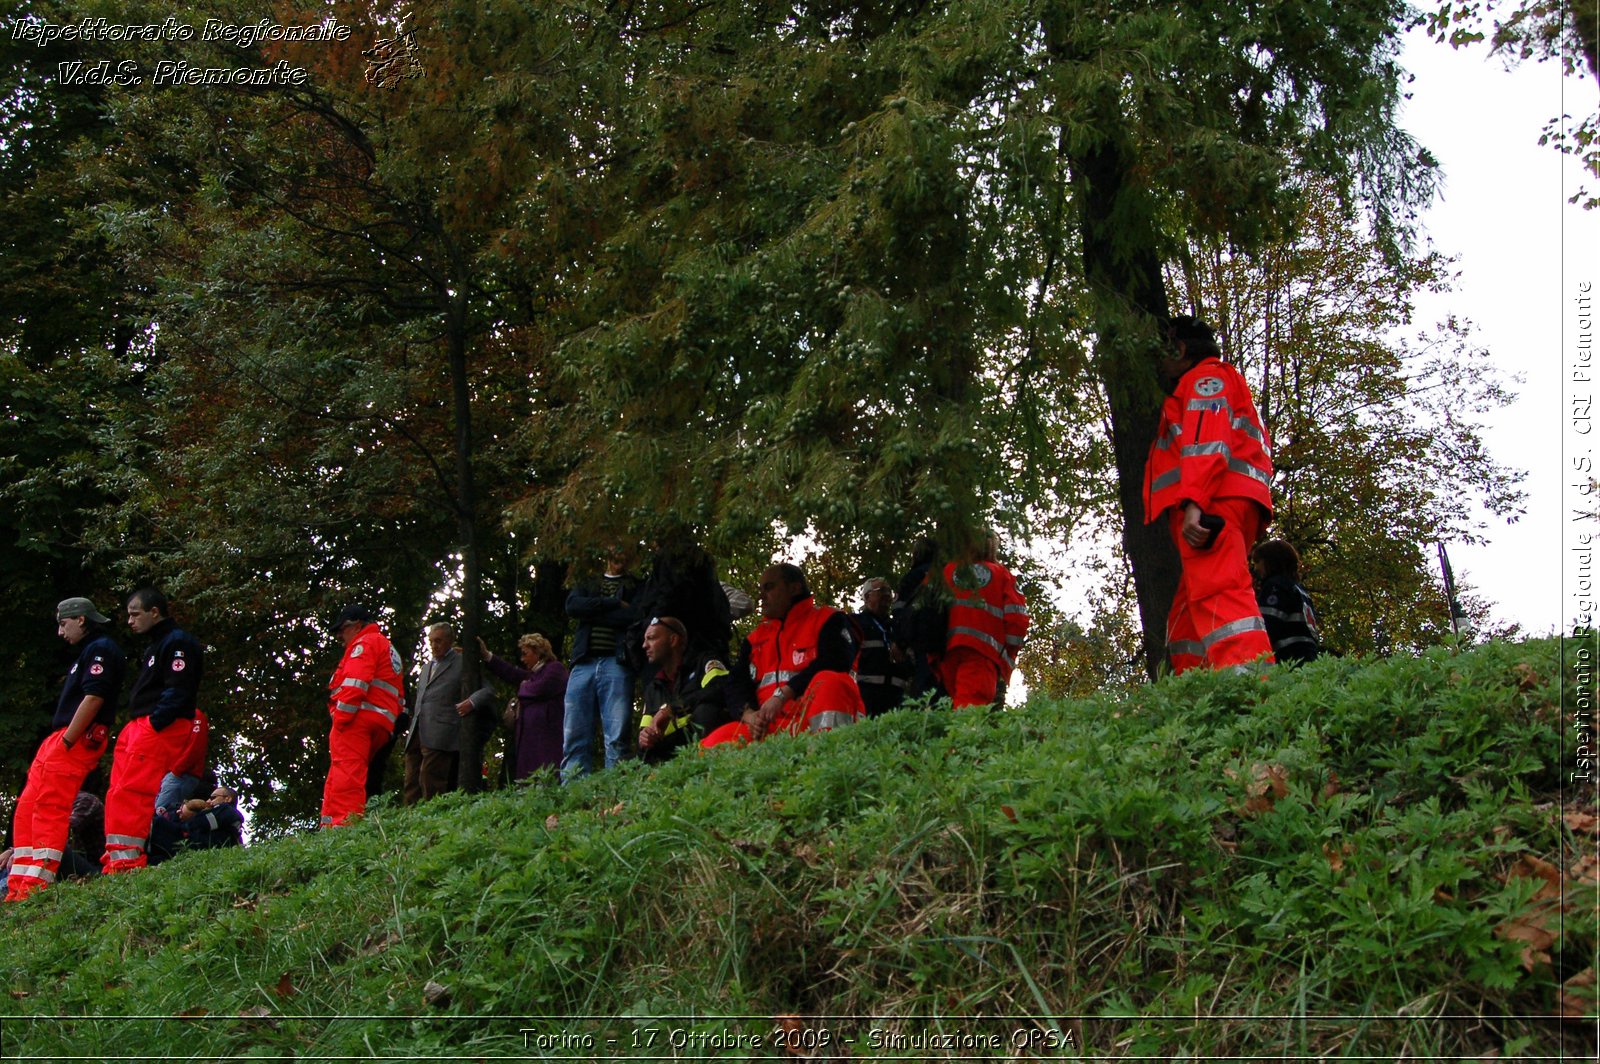 Torino - 17 Ottobre 2009 - Simulazione OPSA -  Croce Rossa Italiana - Ispettorato Regionale Volontari del Soccorso Piemonte